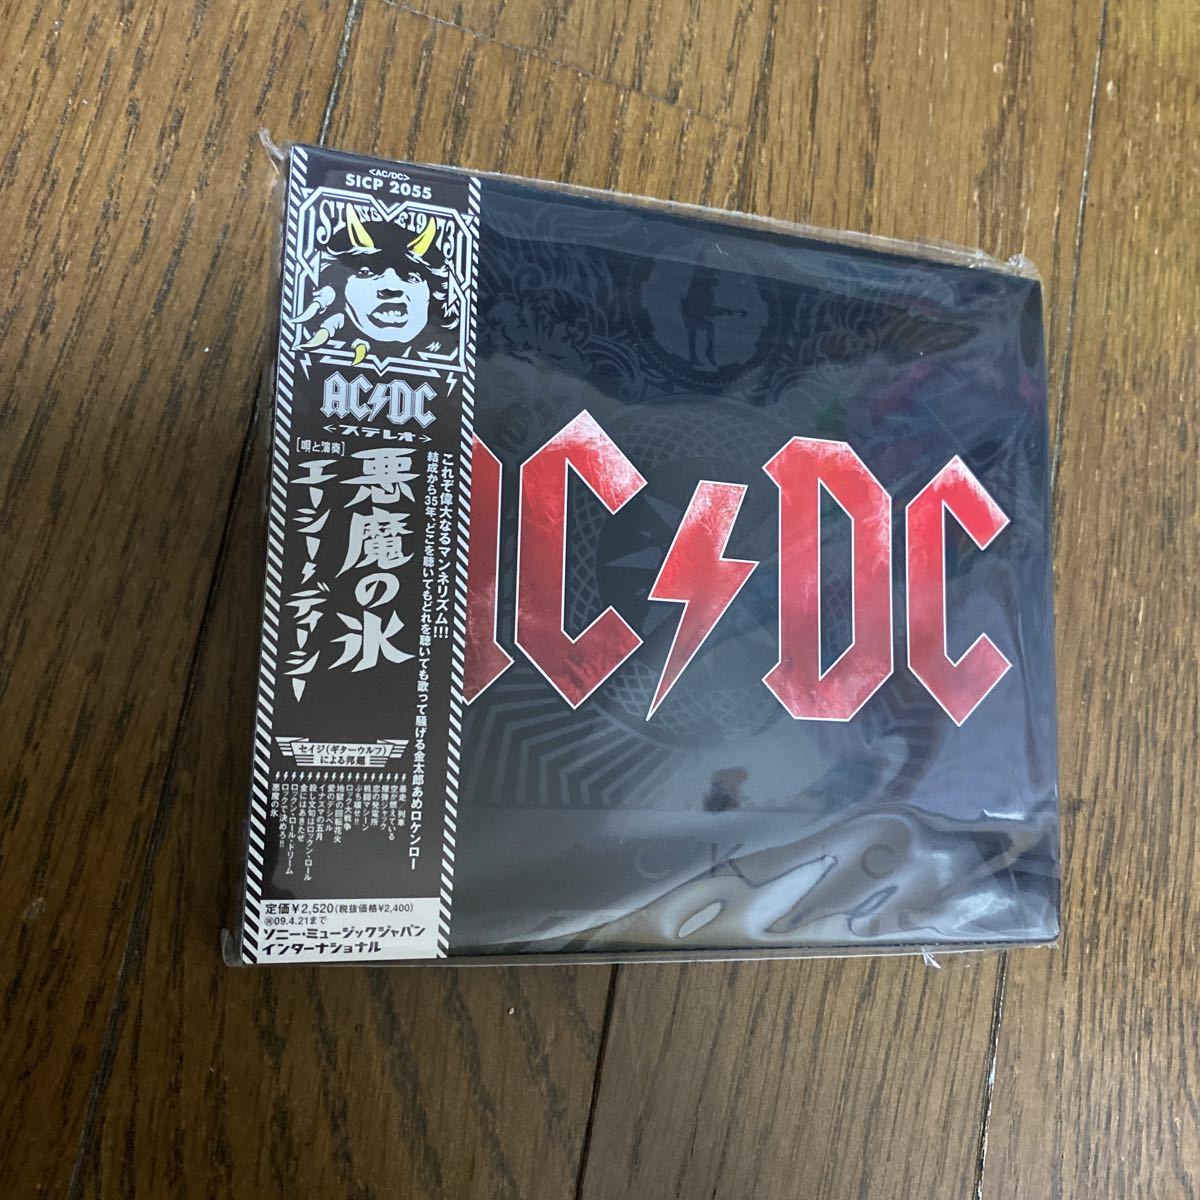  нераспечатанный товар неиспользуемый товар склад хранение товар CD AC/DCe-si-*ti-si- демон. лед BLACK ICE SICP2055